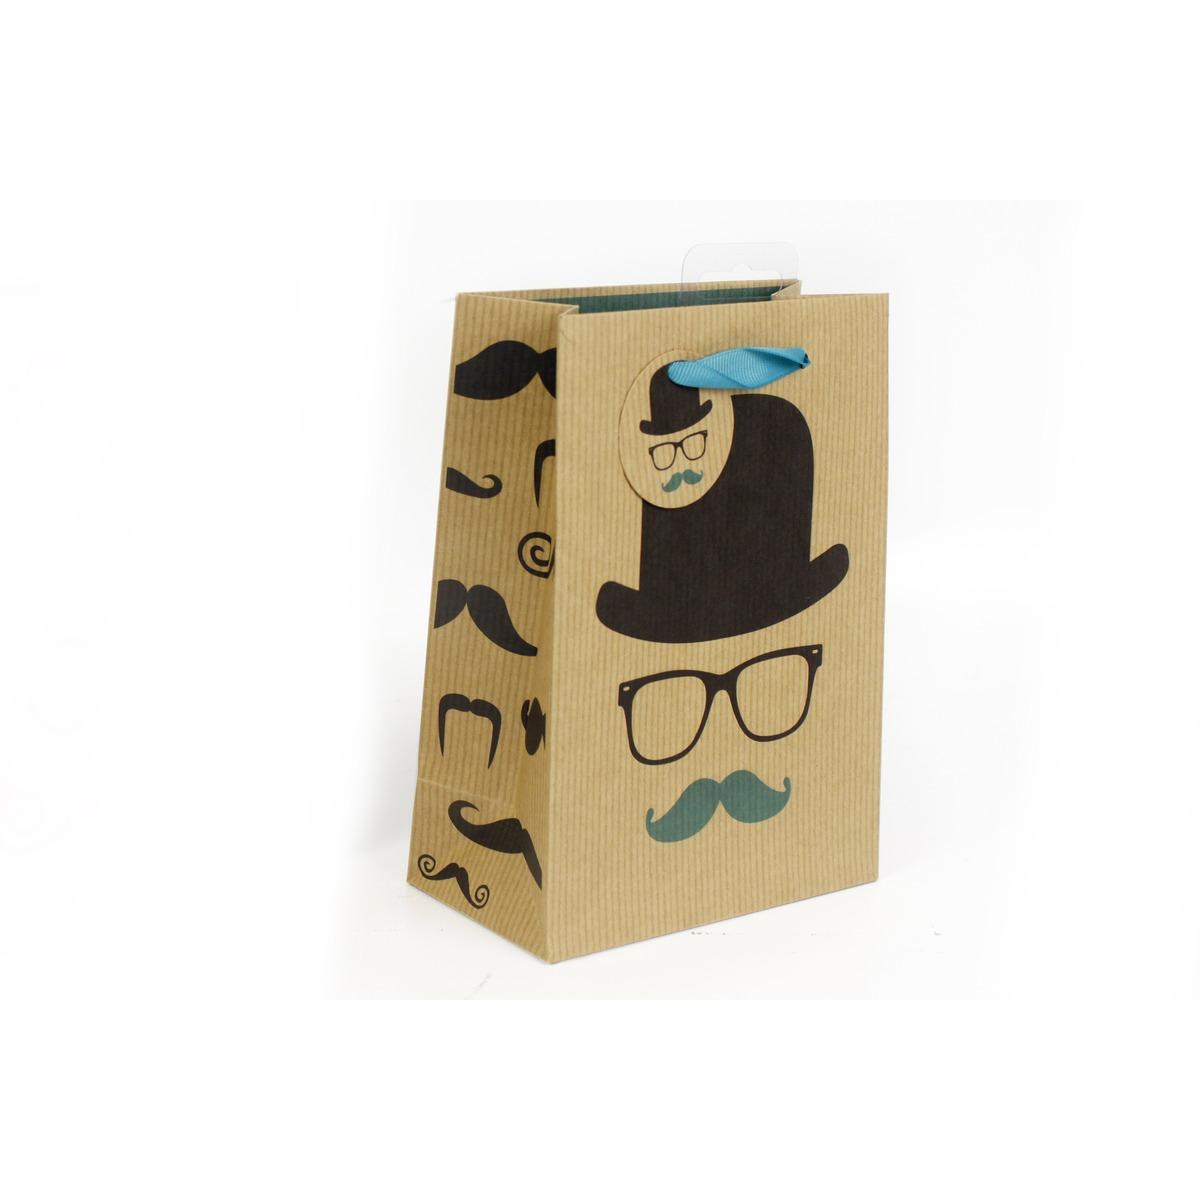 Pochette en carton original - motif Chapeau et moustache - Anse renforcée - Bleu